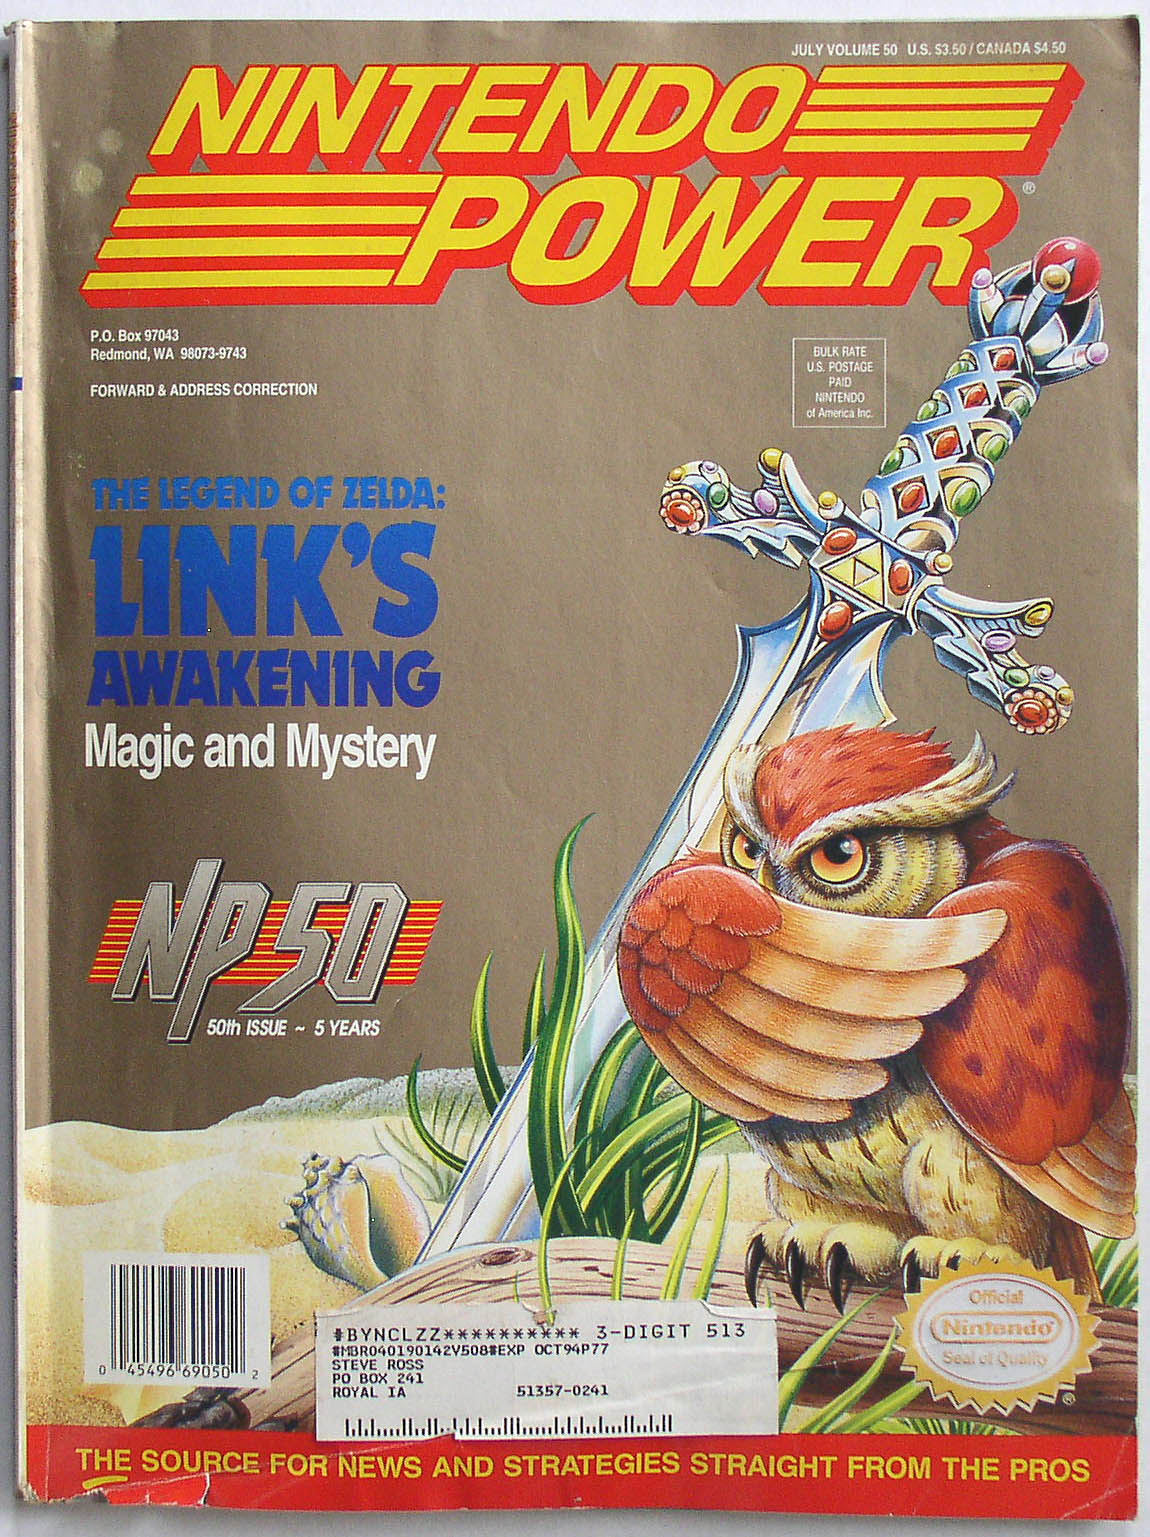 Nintendo power. Nintendo Power posters. Nintendo Power Magazine. Nintendo album Covers.